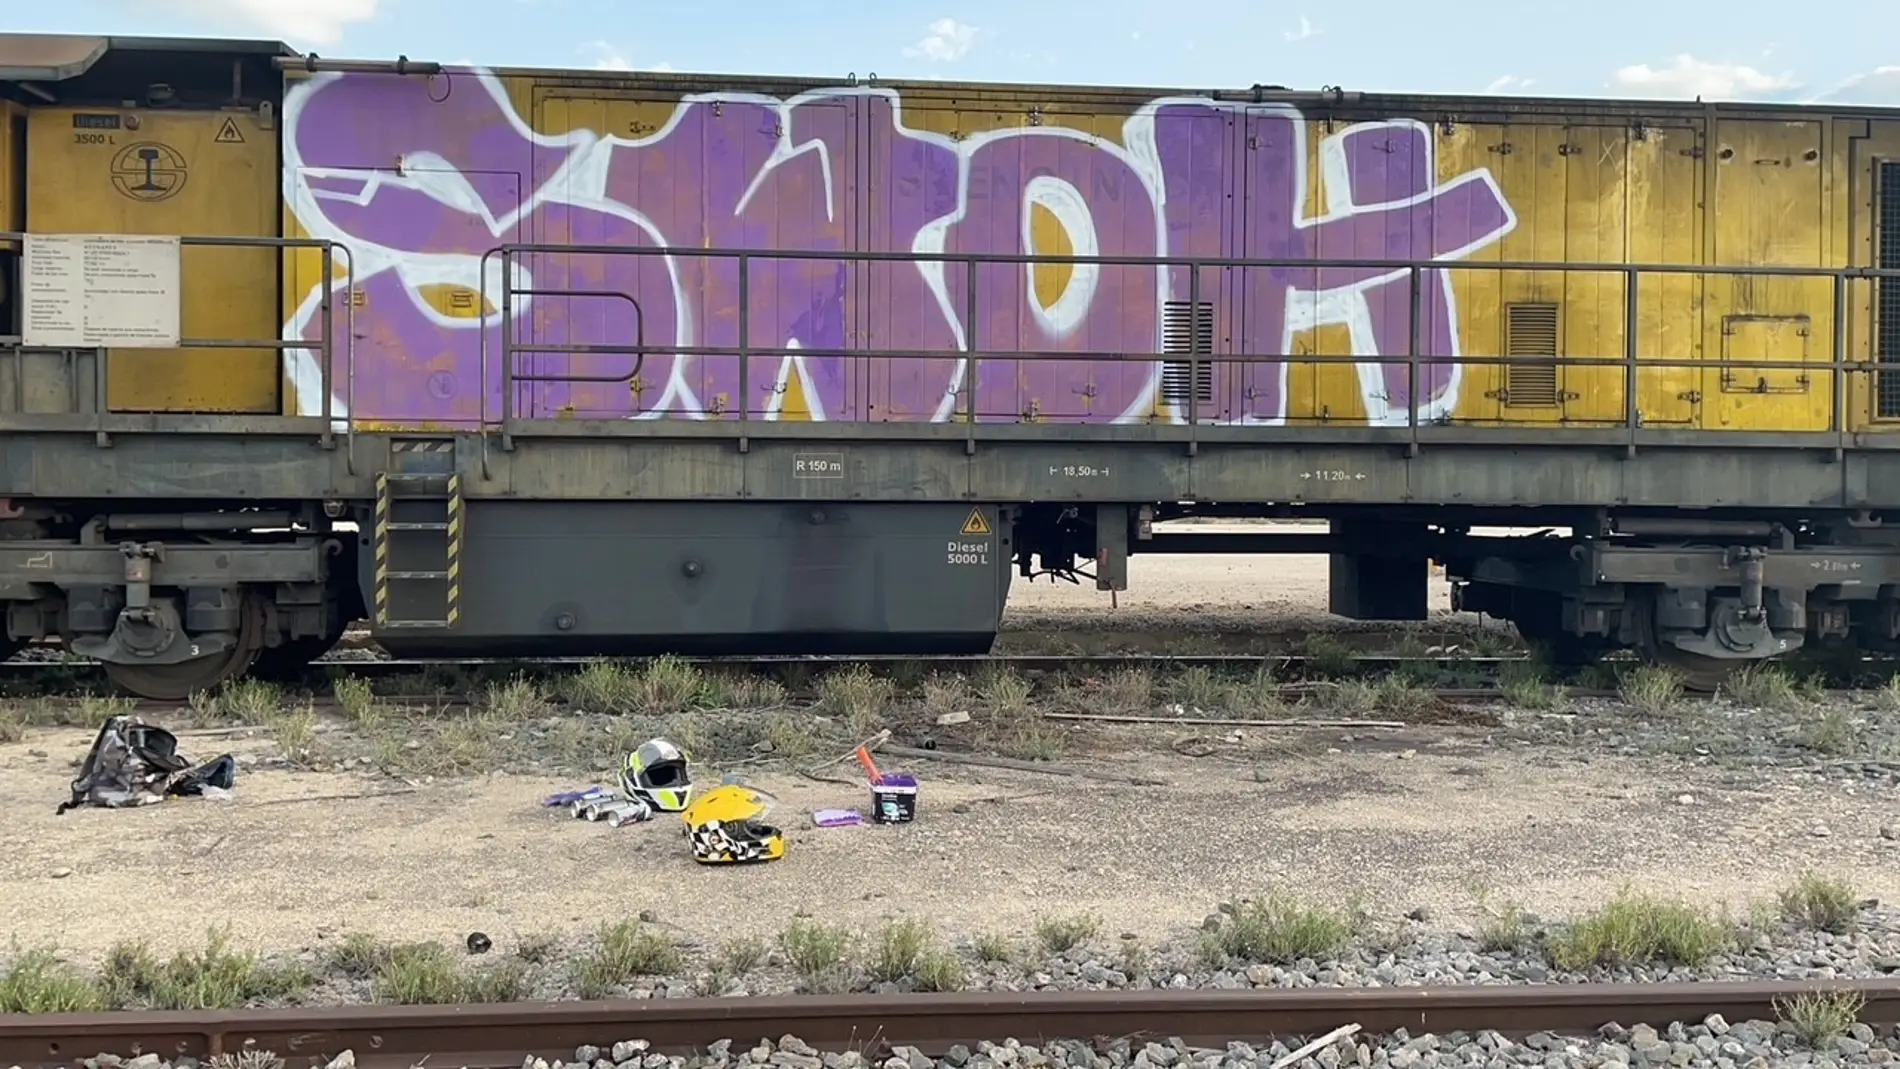 La Policía Local identifica a los autores de los grafitis realizados en dos vagones de un tren en Elche